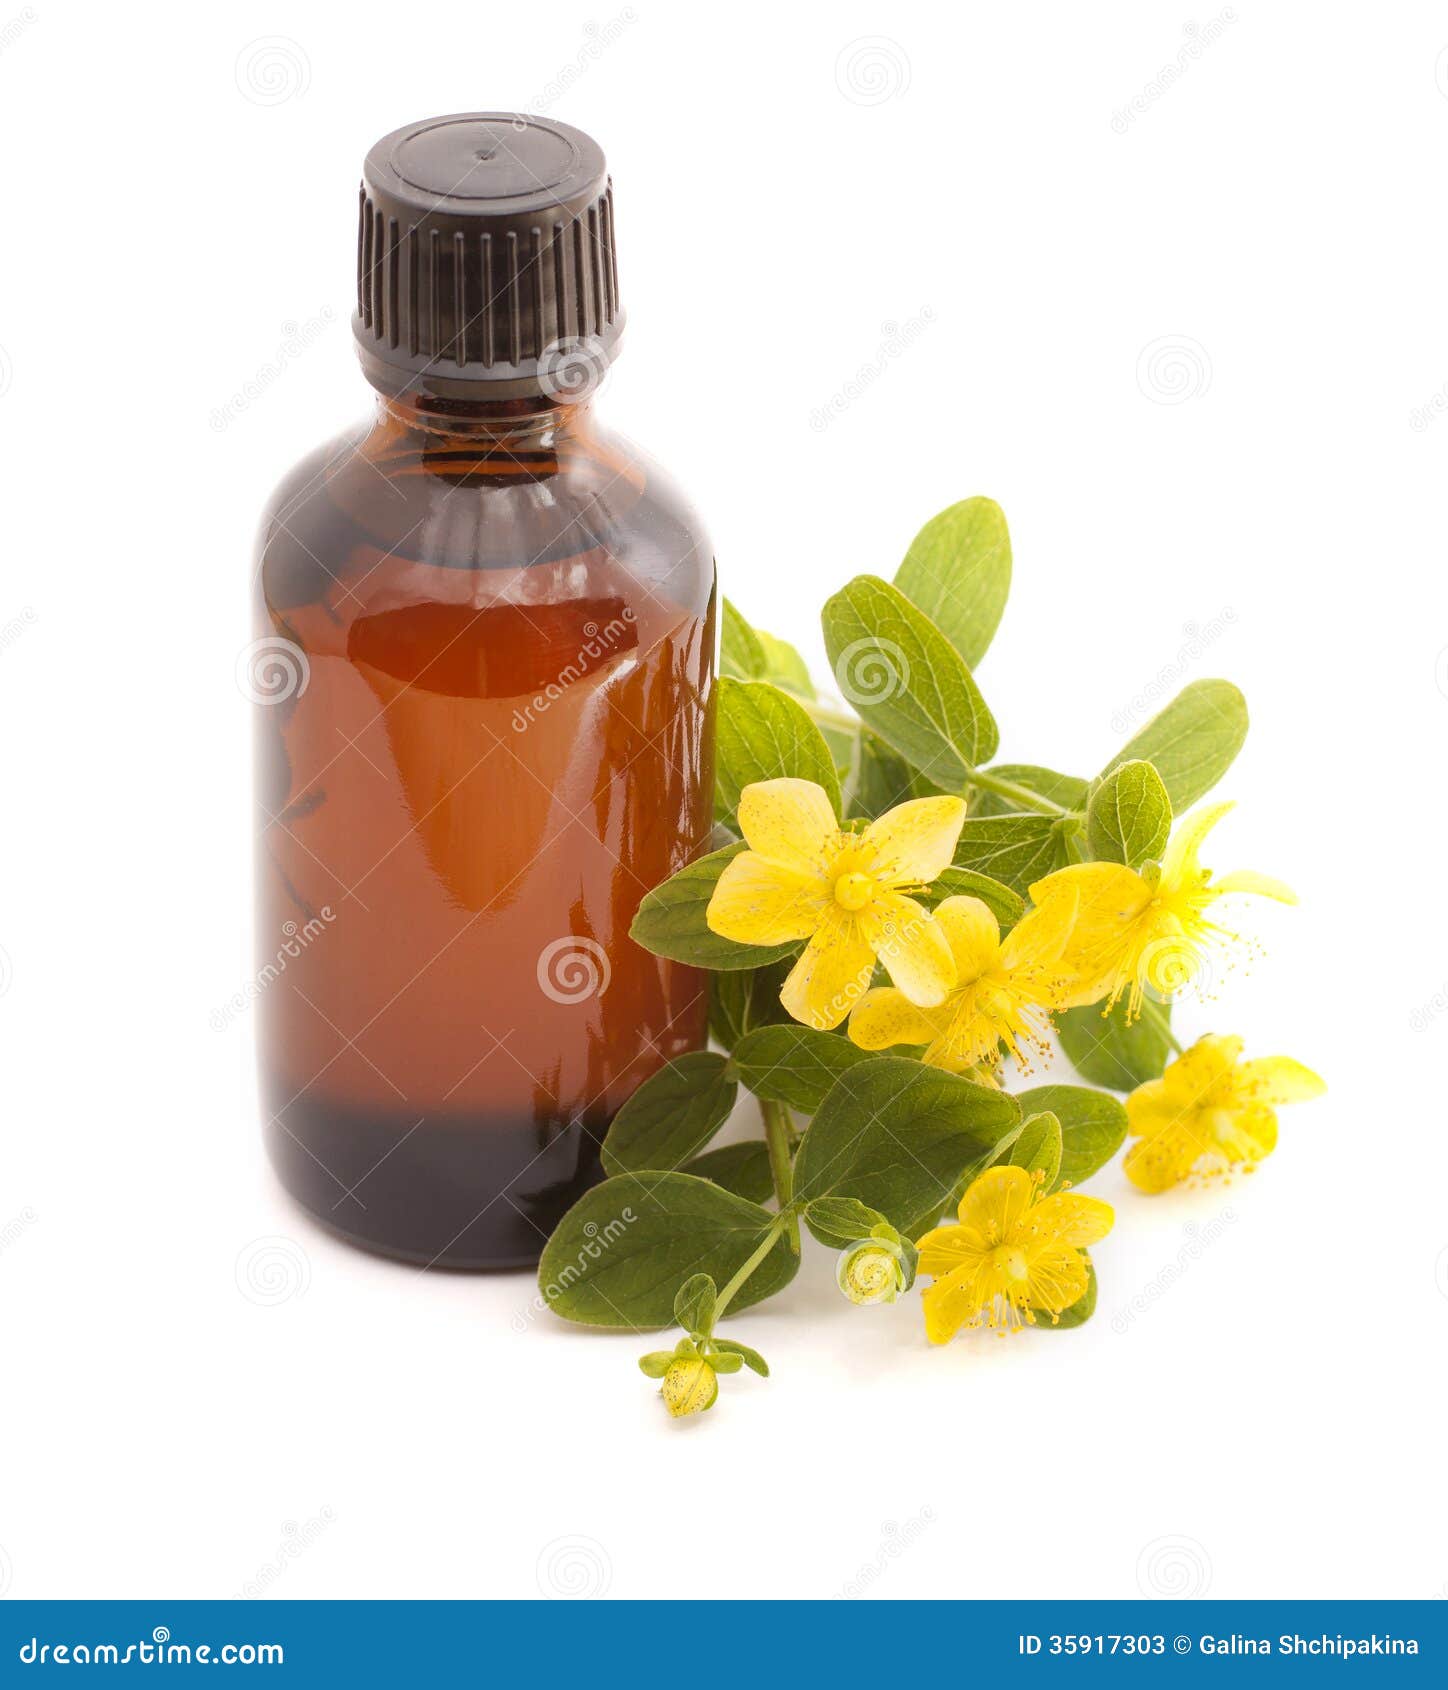 essential oil of hypericum perforatum.